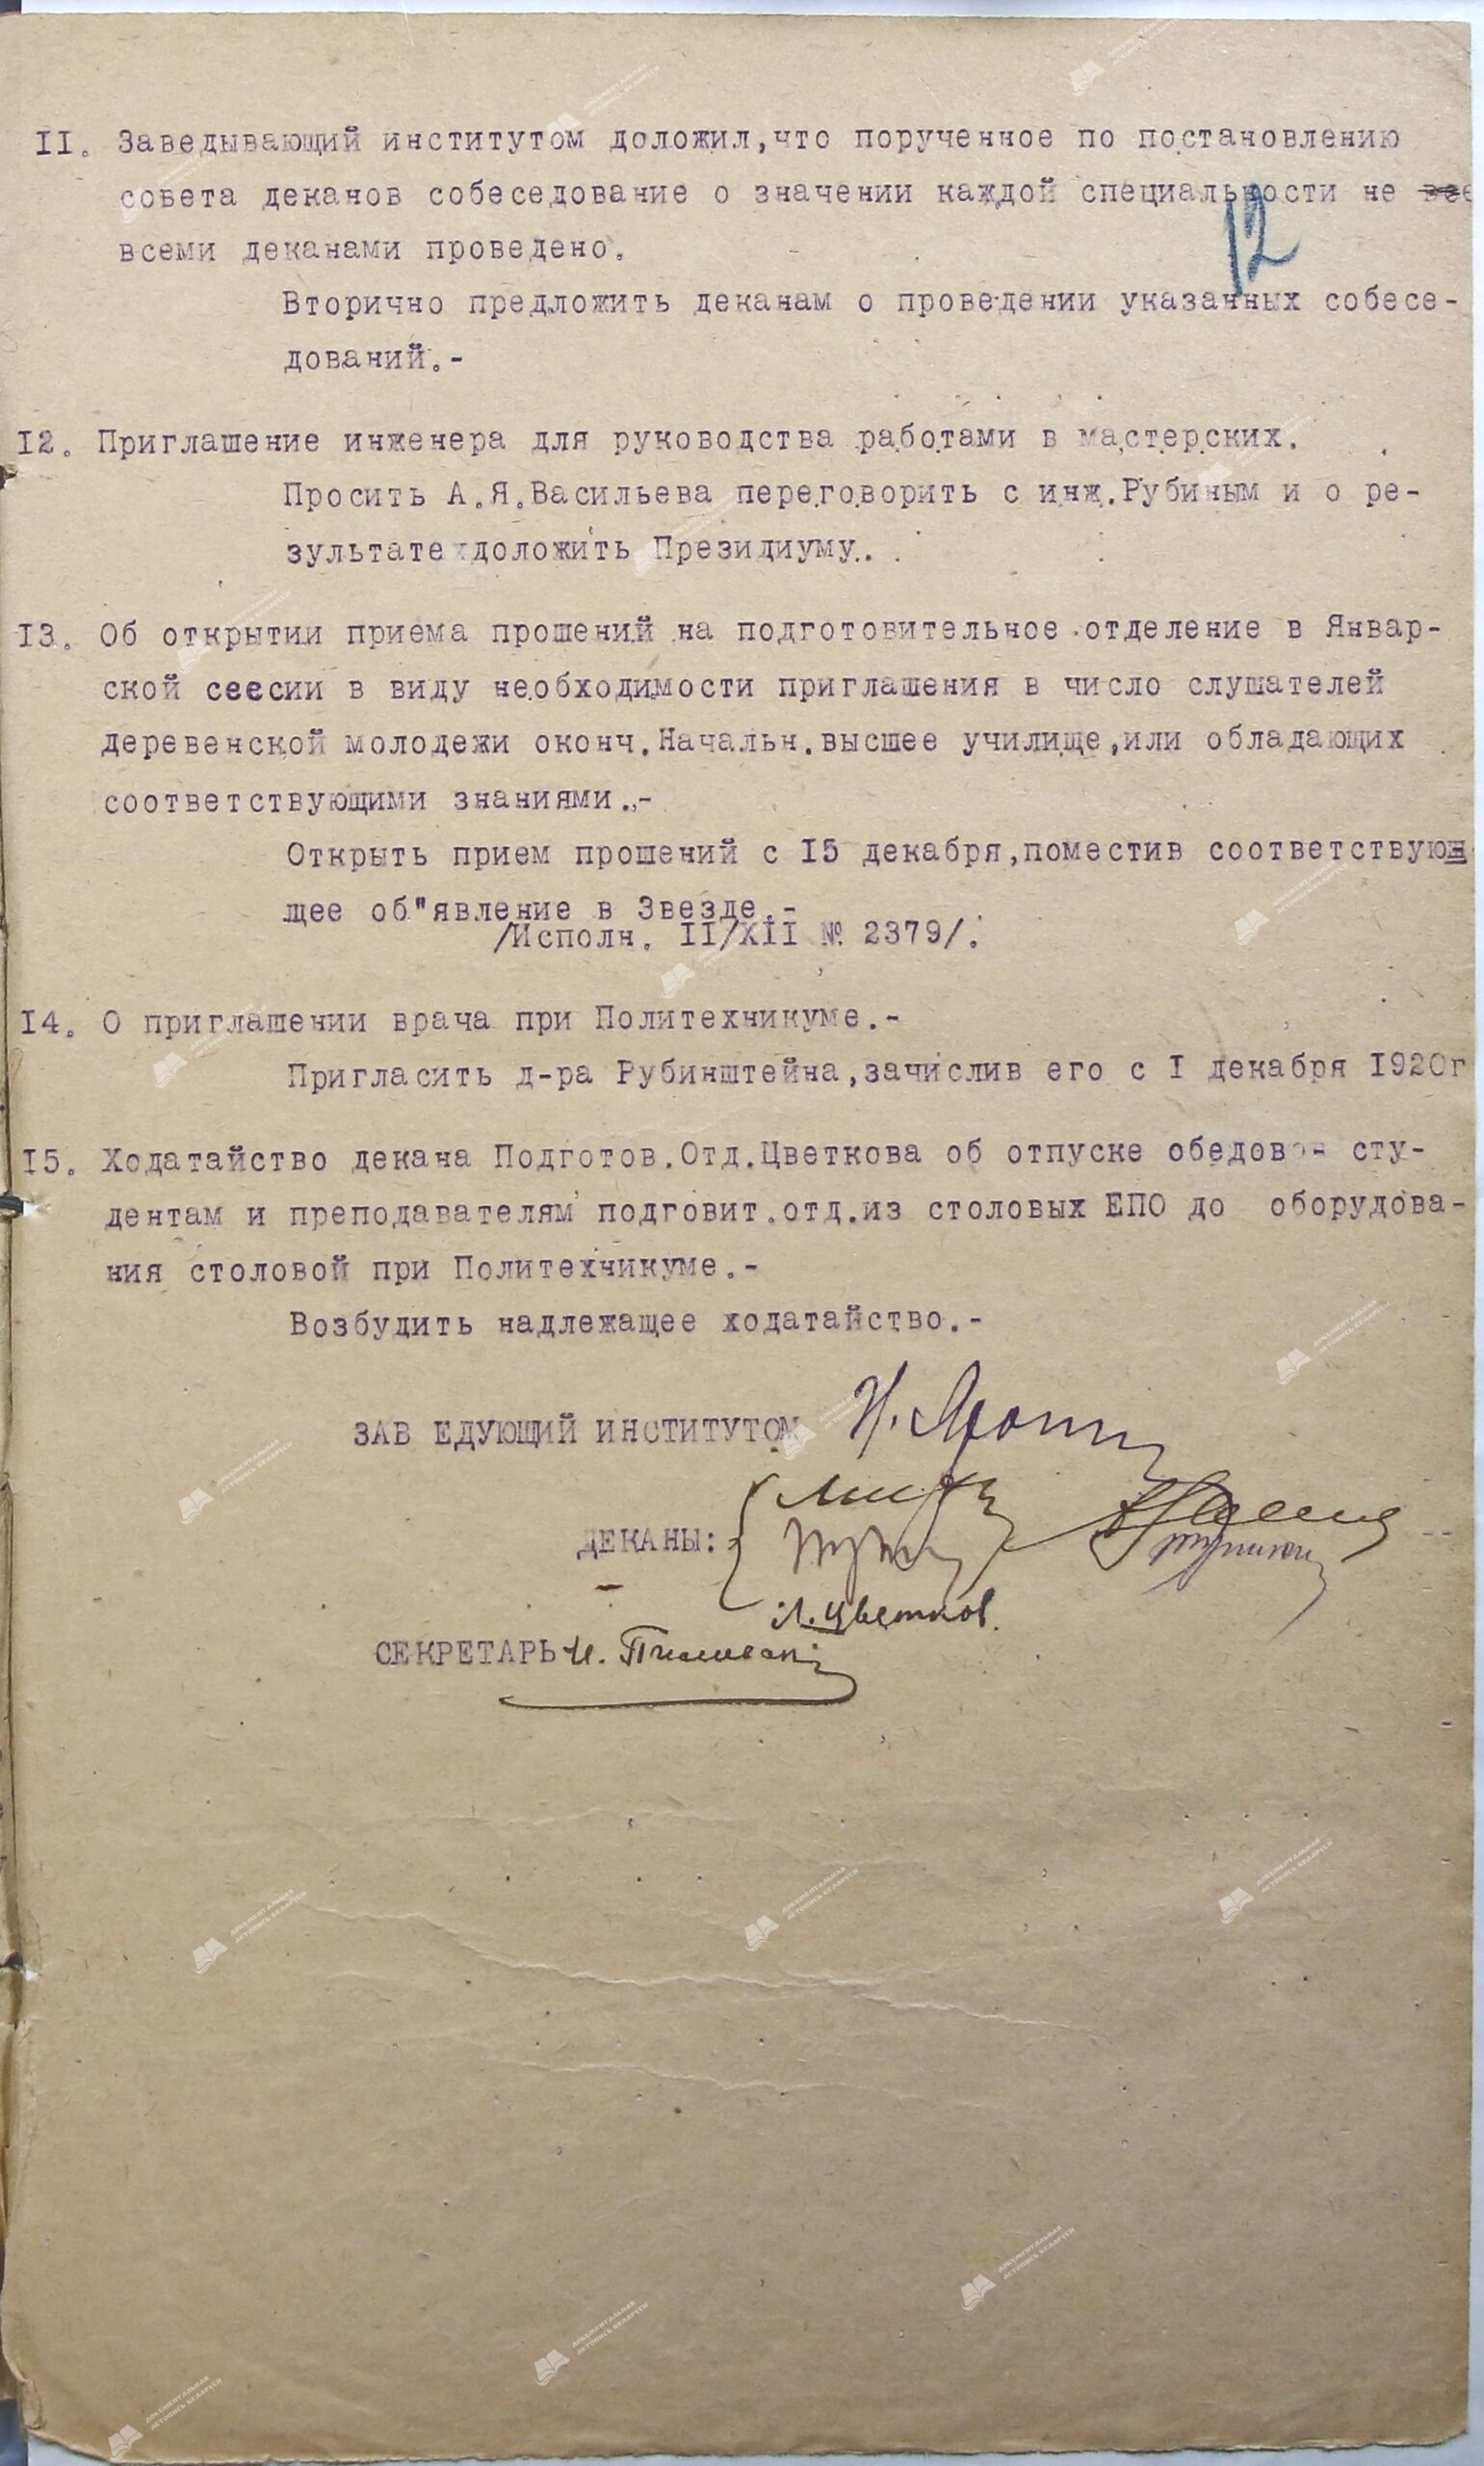 Протокол от 10 декабря 1920 г. №4 Заседания Совета деканов-стр. 2